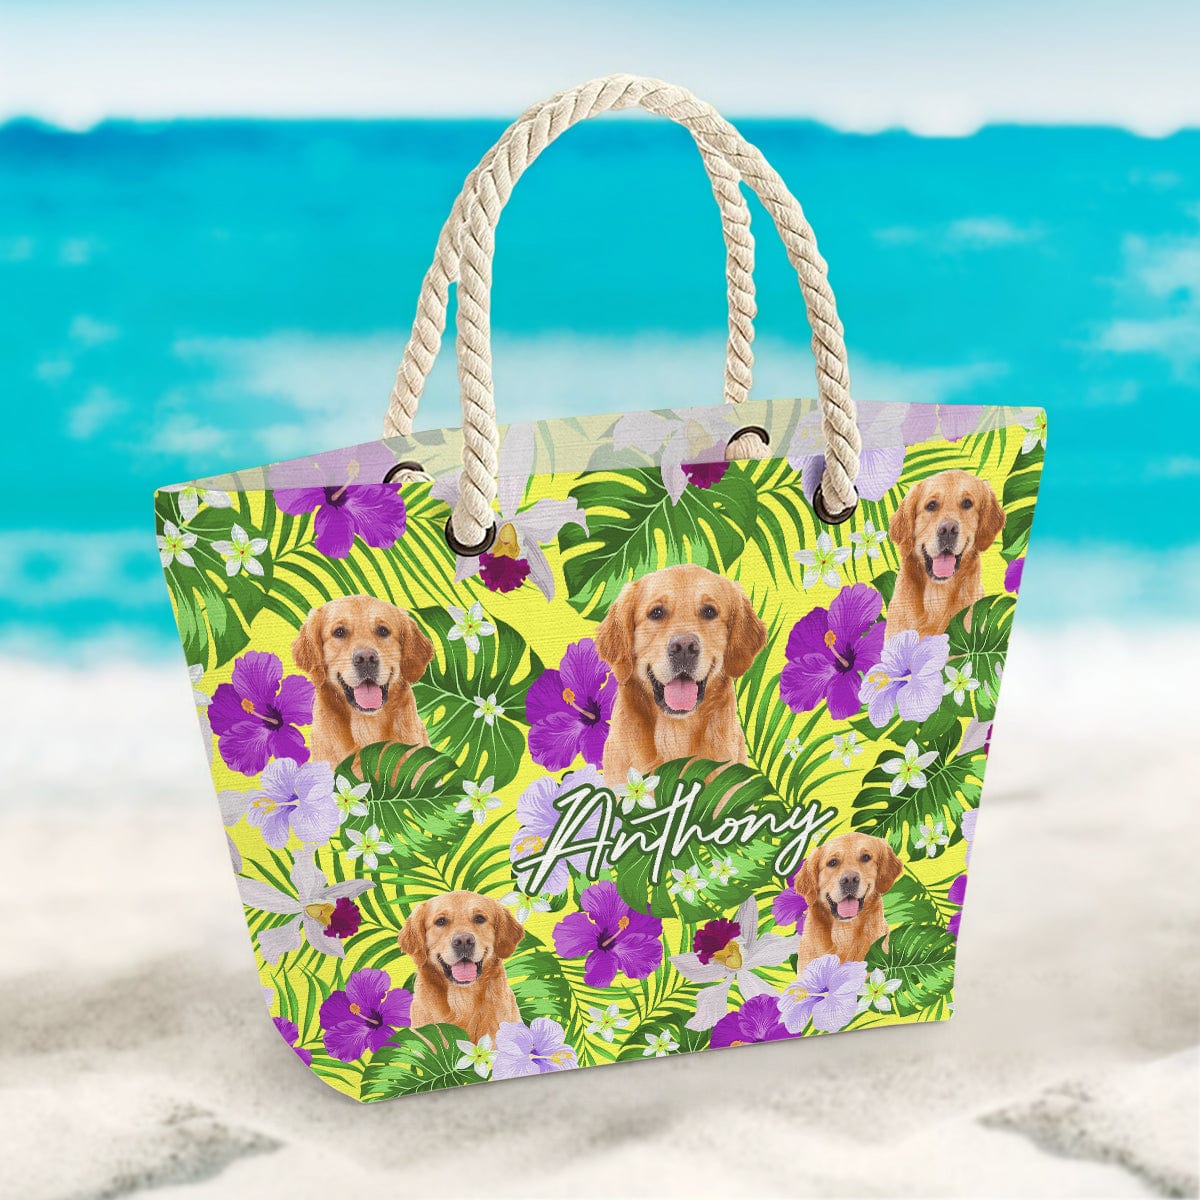 GeckoCustom Custom Photo Canvas Beach Bag With Rope Handle Dog N304 889609